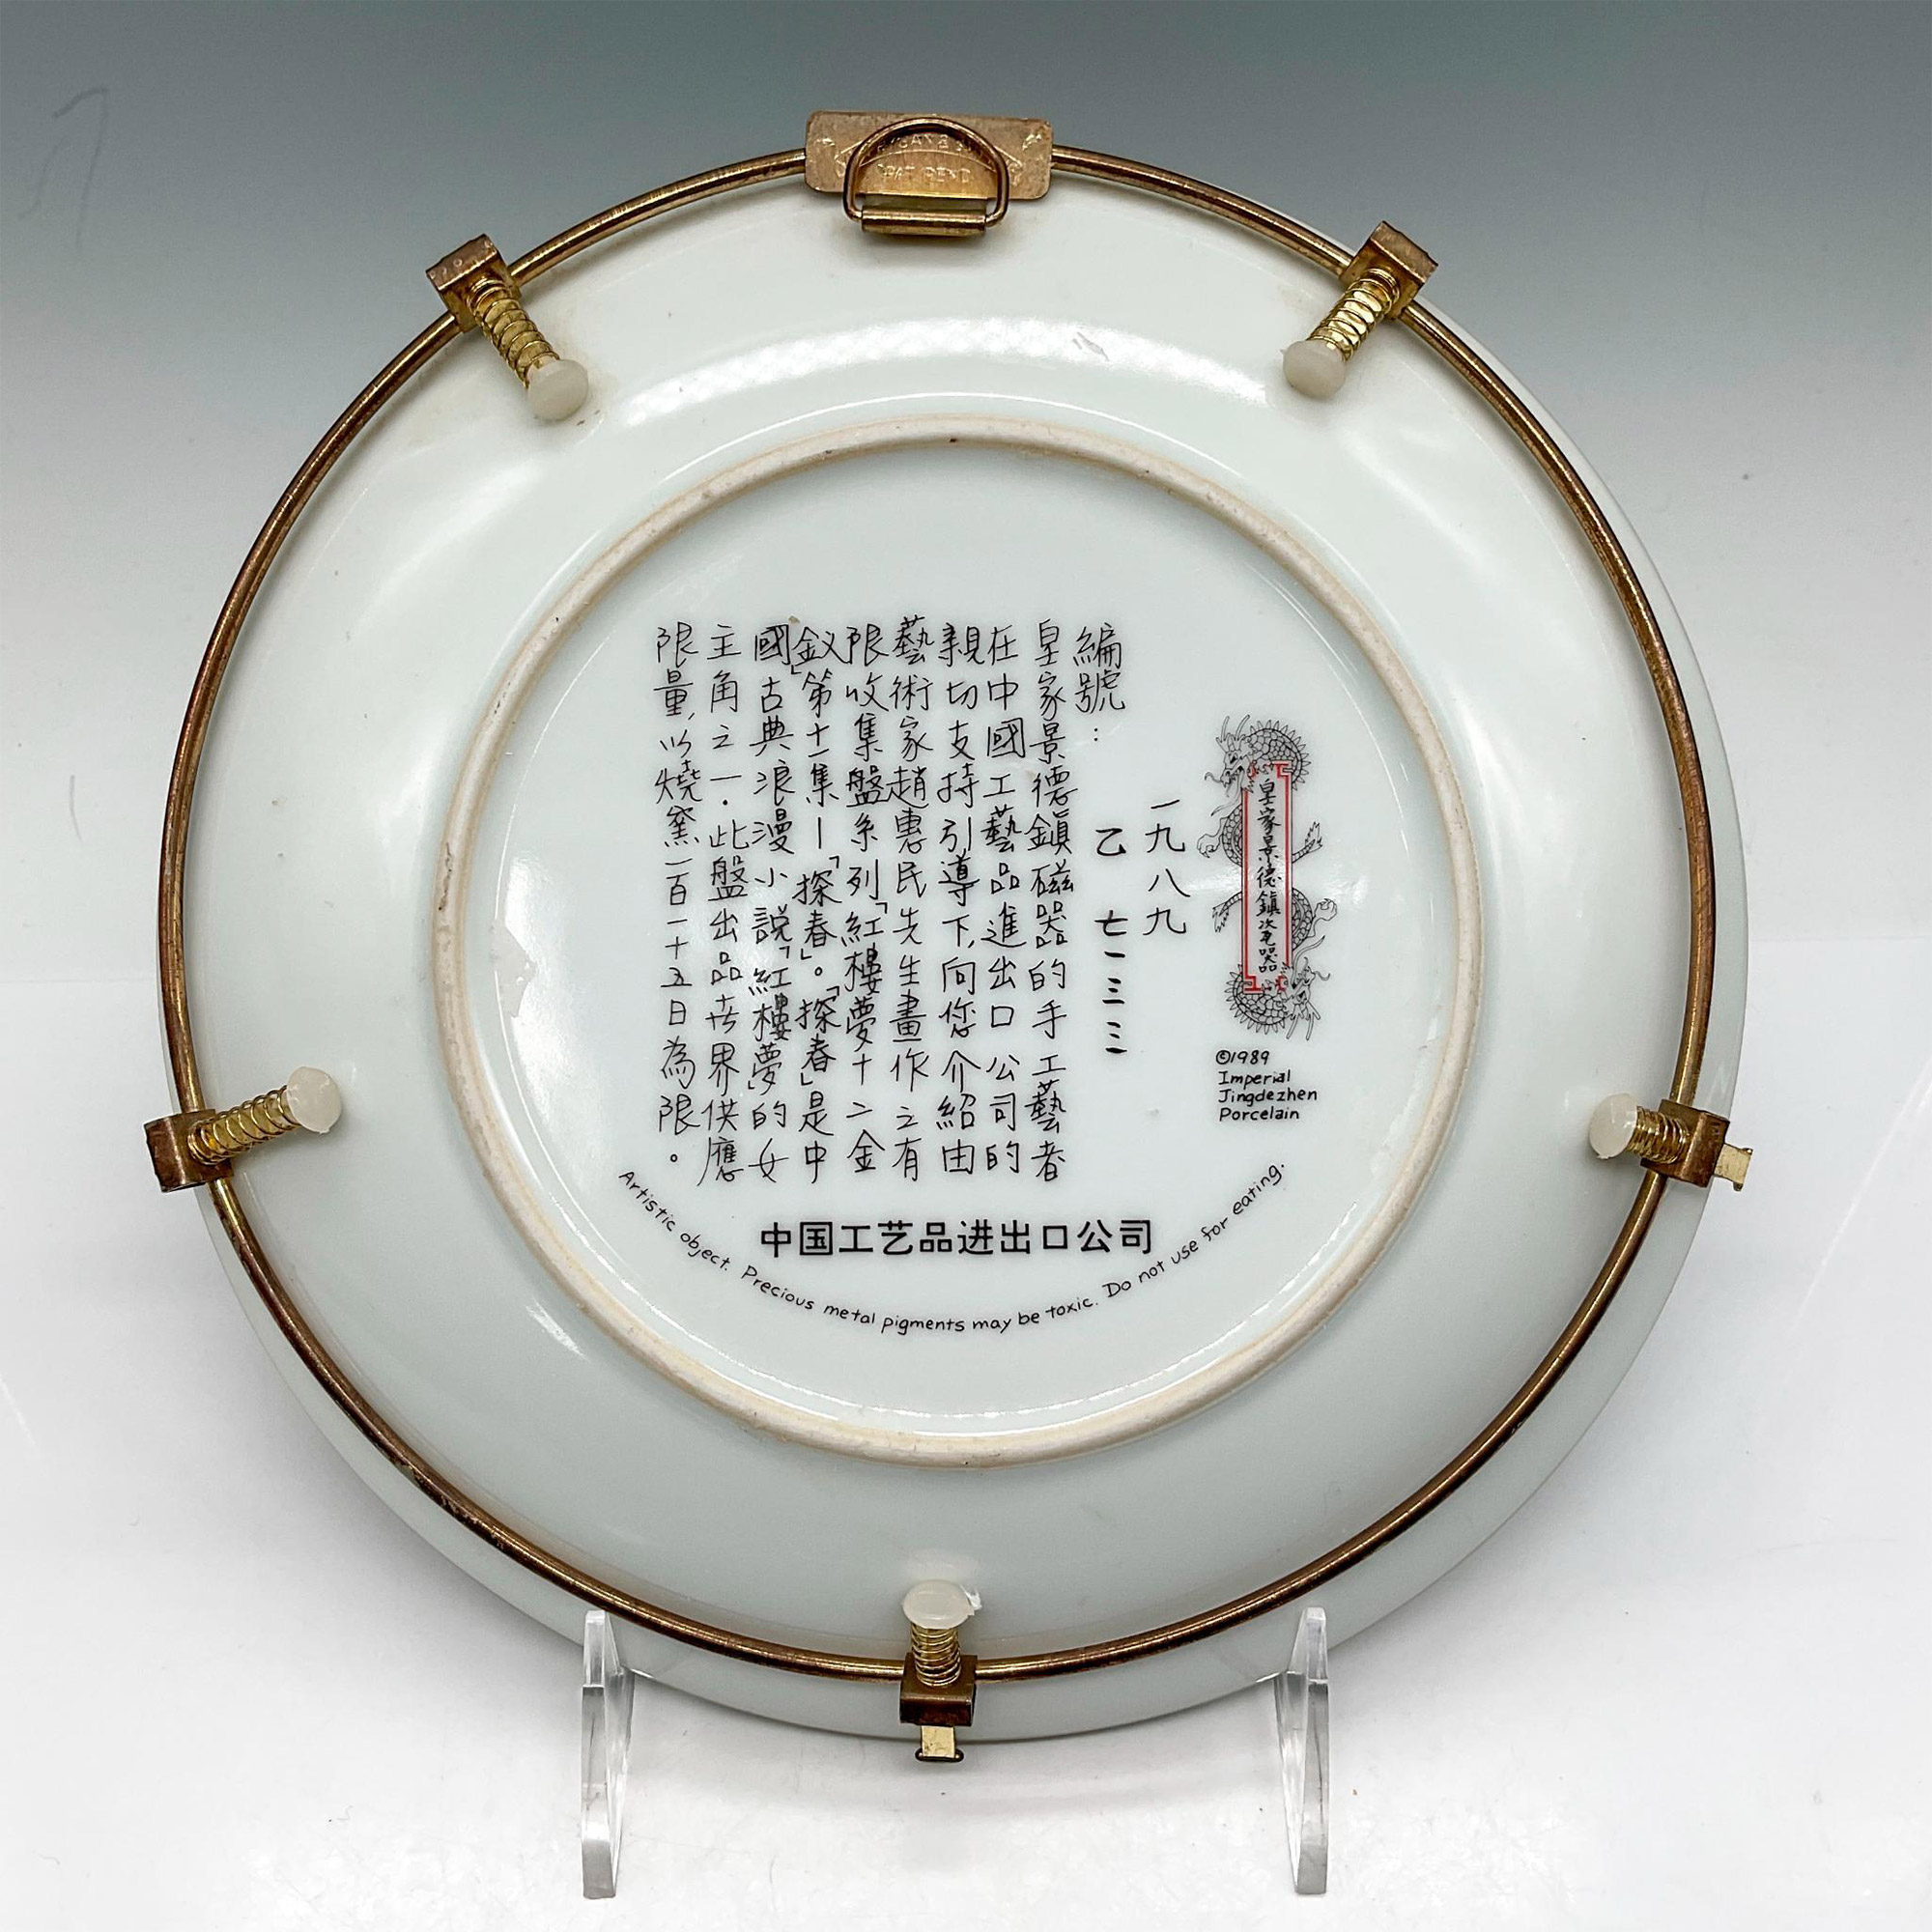 3pc Imperial Jingdezhen Porcelain Plates - Image 5 of 5